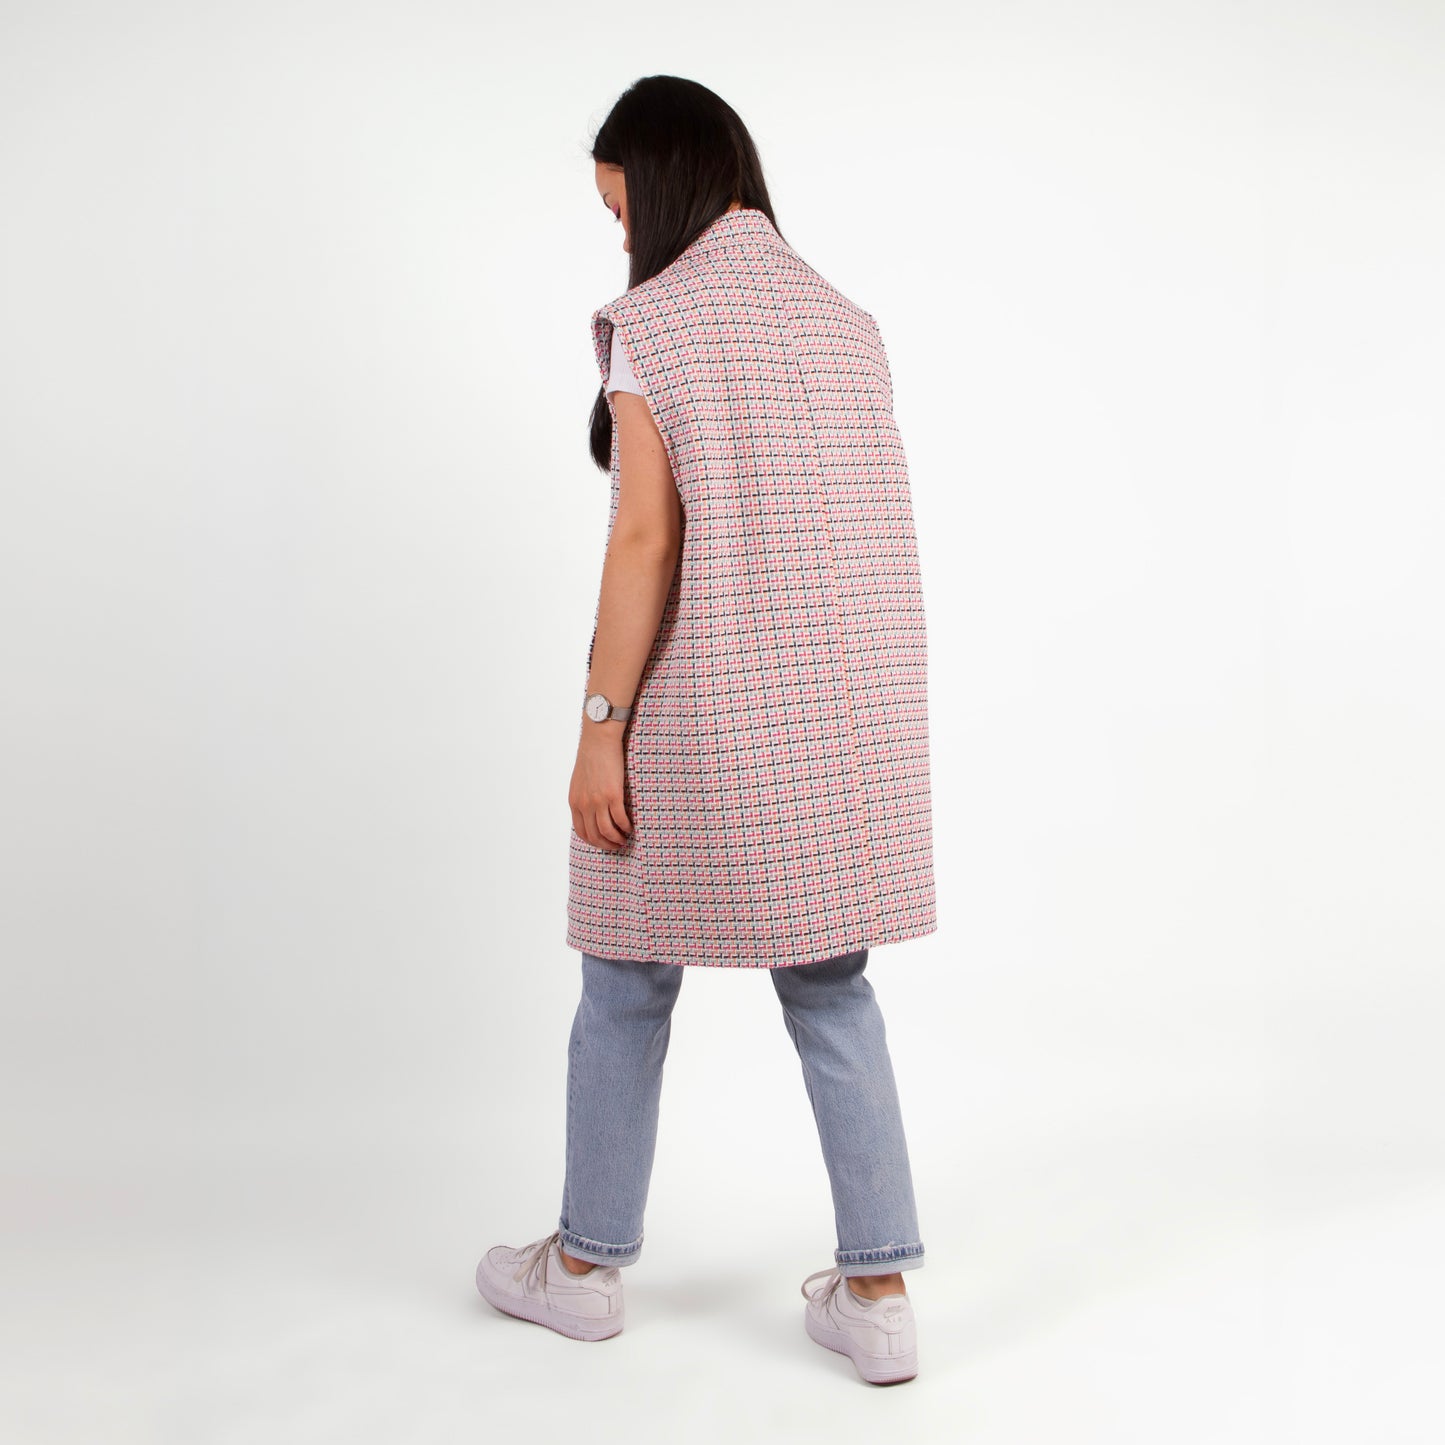 Lucewear: femme portant une veste sans manche en tweed coloré